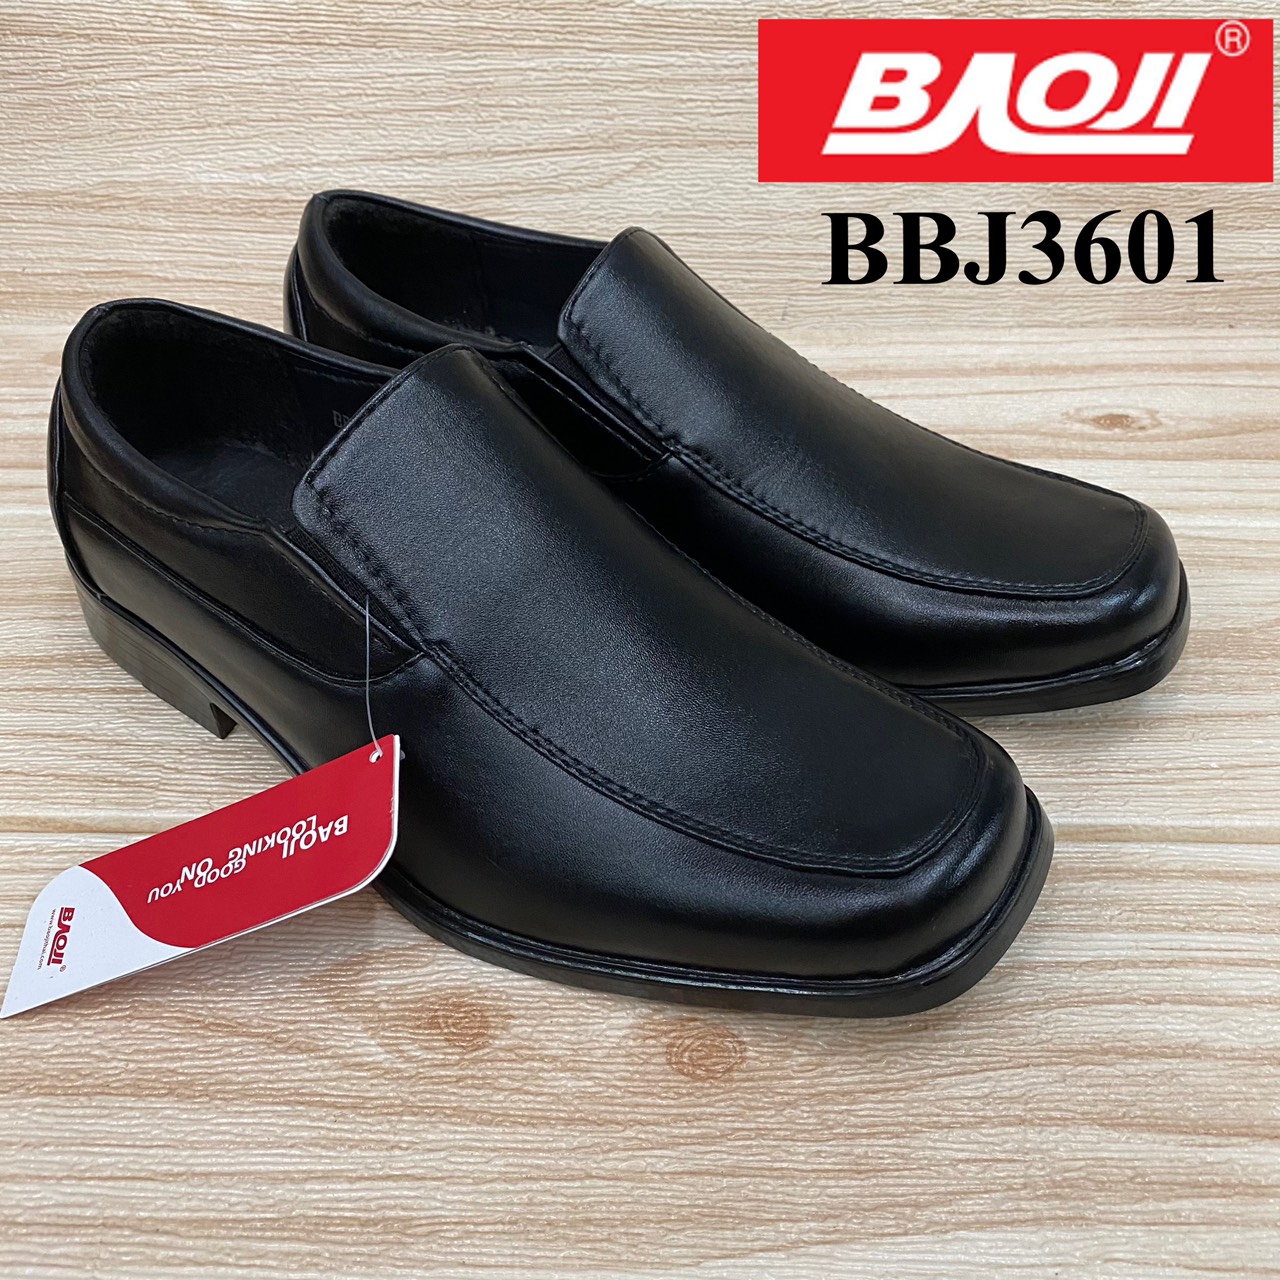 รองเท้าคัดชูหนังสีดำ Baoji BBJ 3601 (36-41)